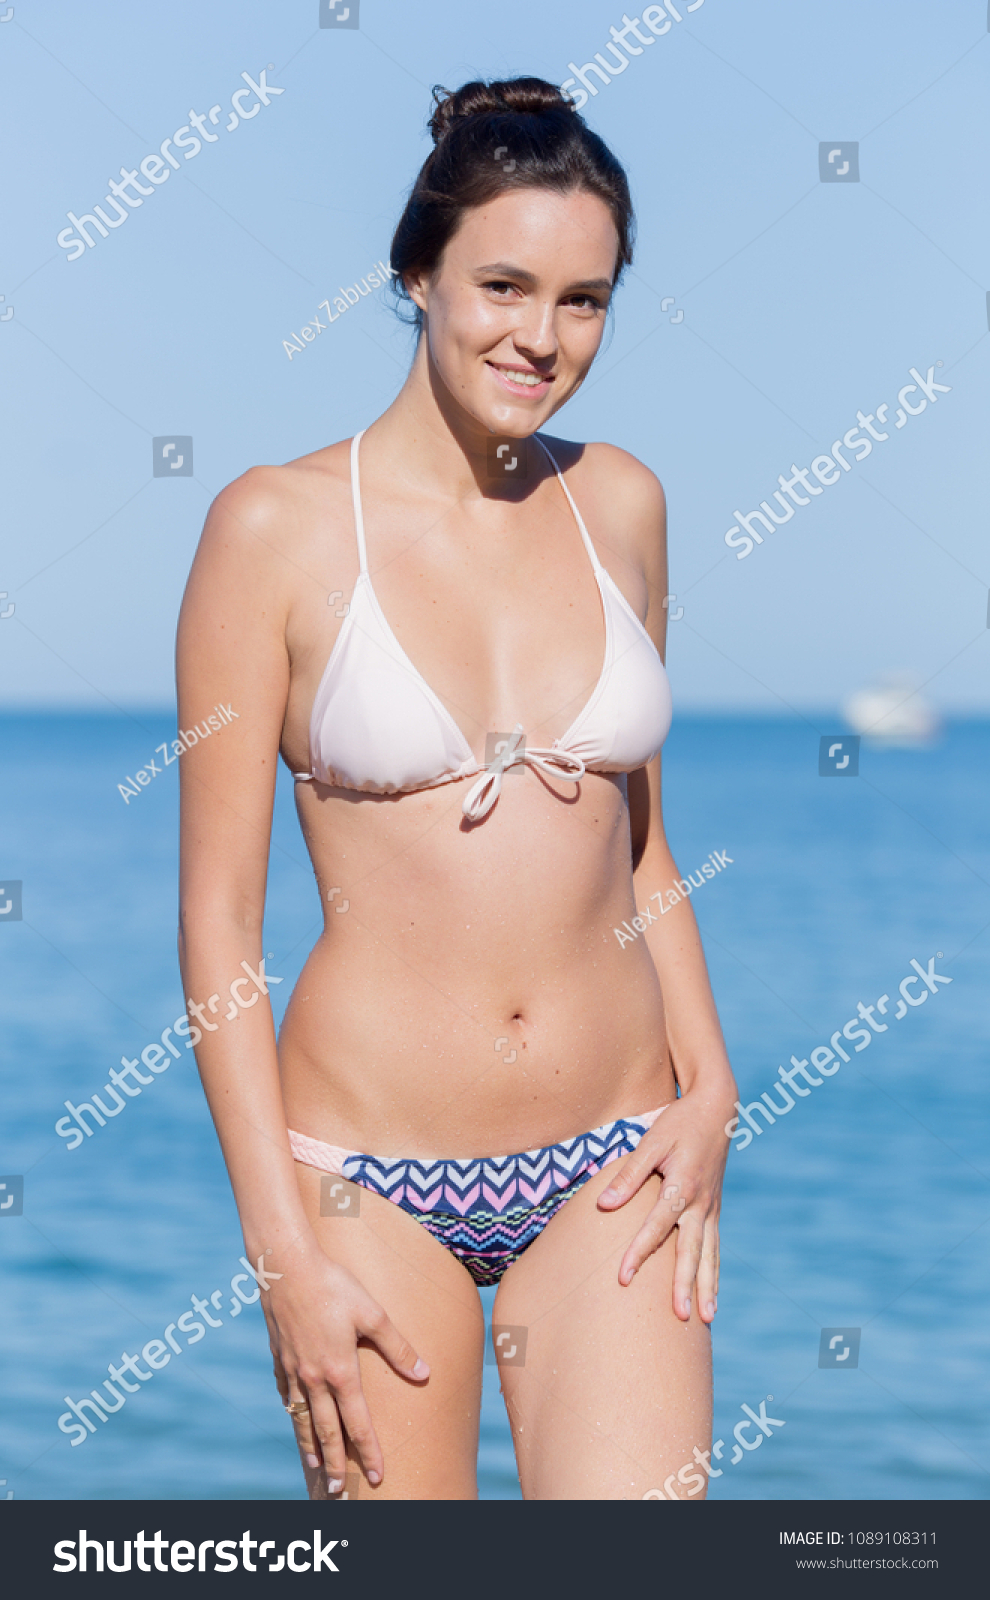 Wife In Bikini Pictures